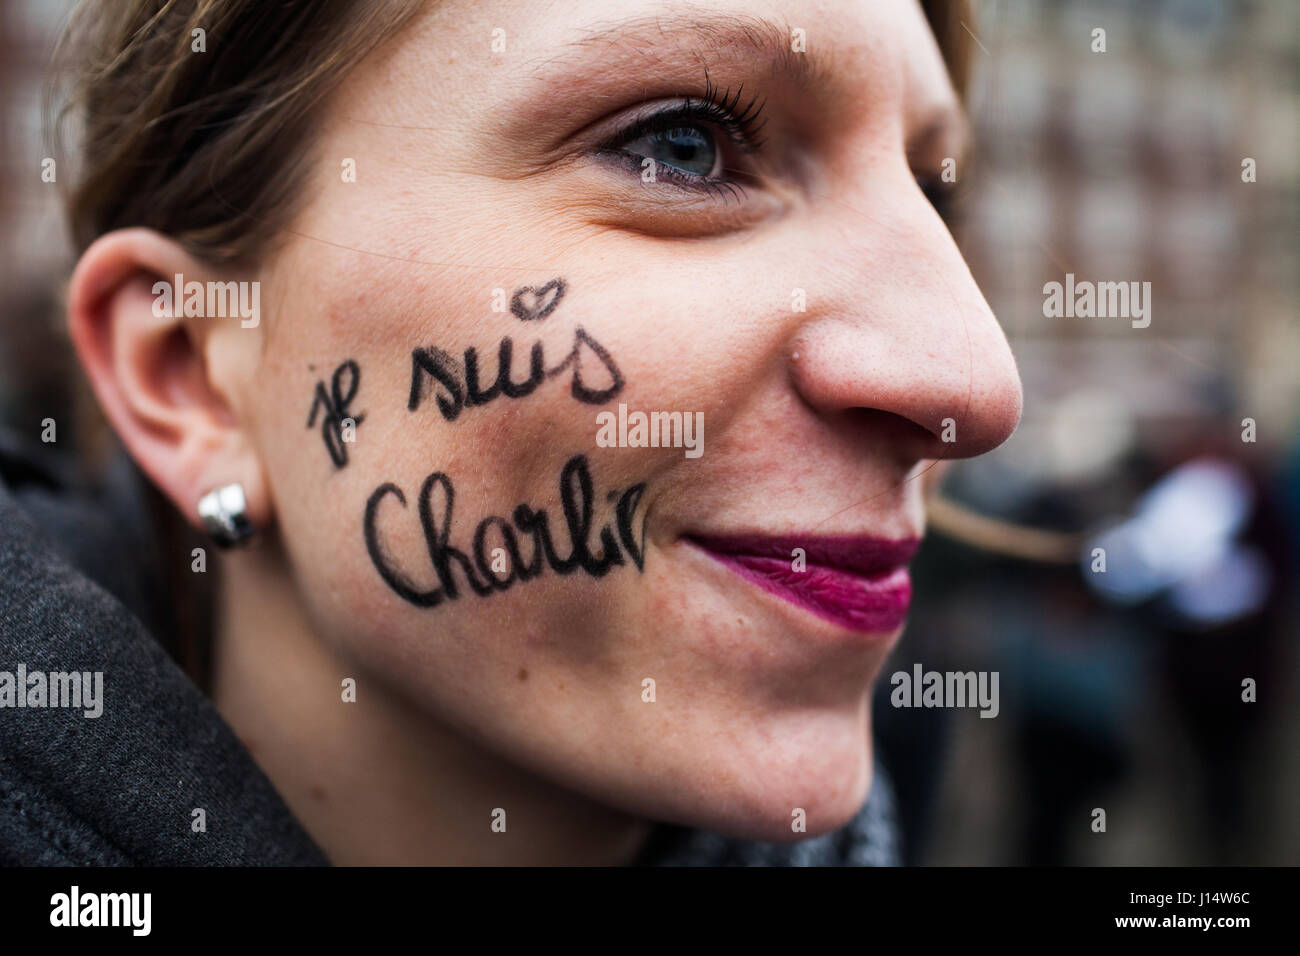 Eine Frau hat den Text gemalt "Je Suis Charlie" auf die Wange auf die "Je Suis Charlie" Denkmal in Kopenhagen nach dem Massaker an den französischen satirischen Stockfoto